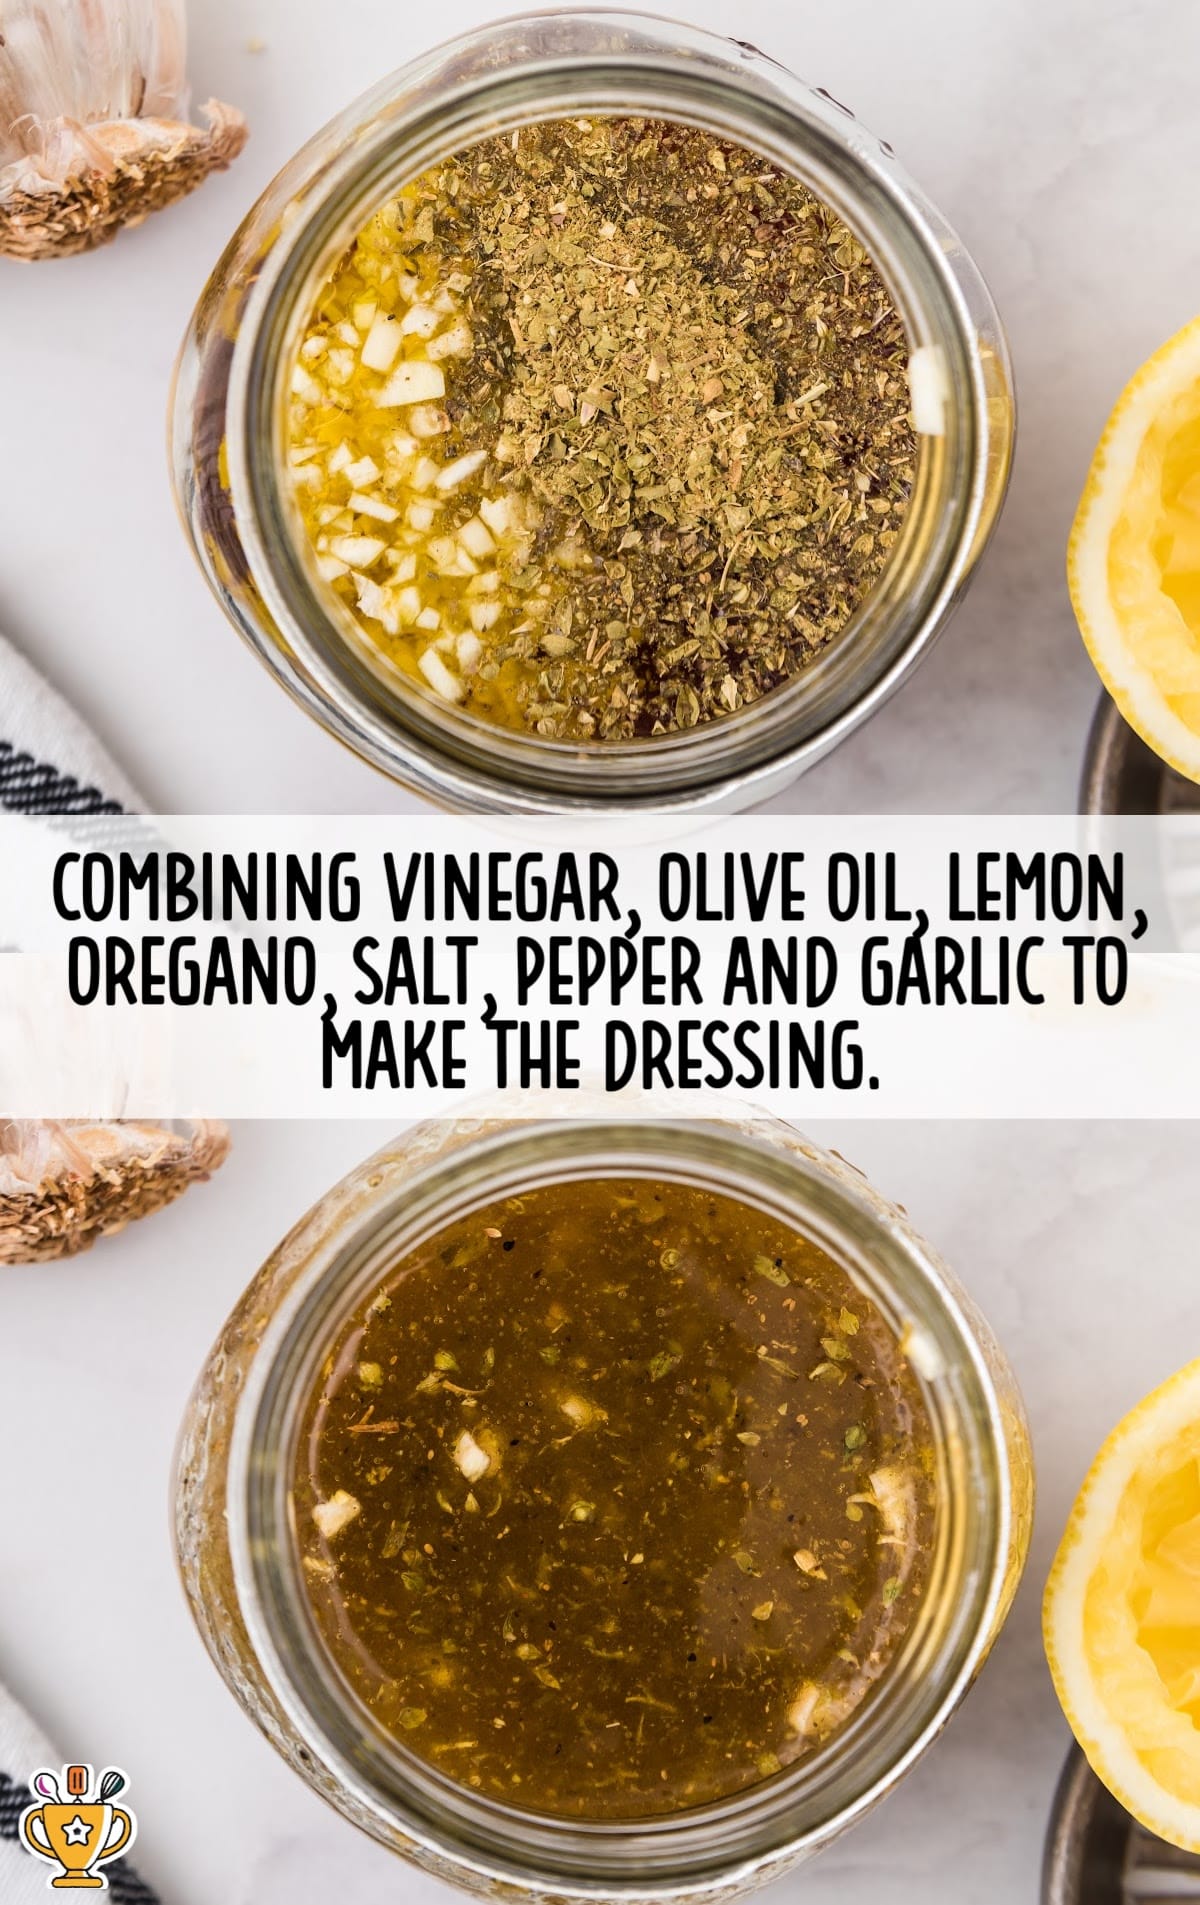 combine vinegar, olive oil, lemon, oregano, salt, pepper, and garlic